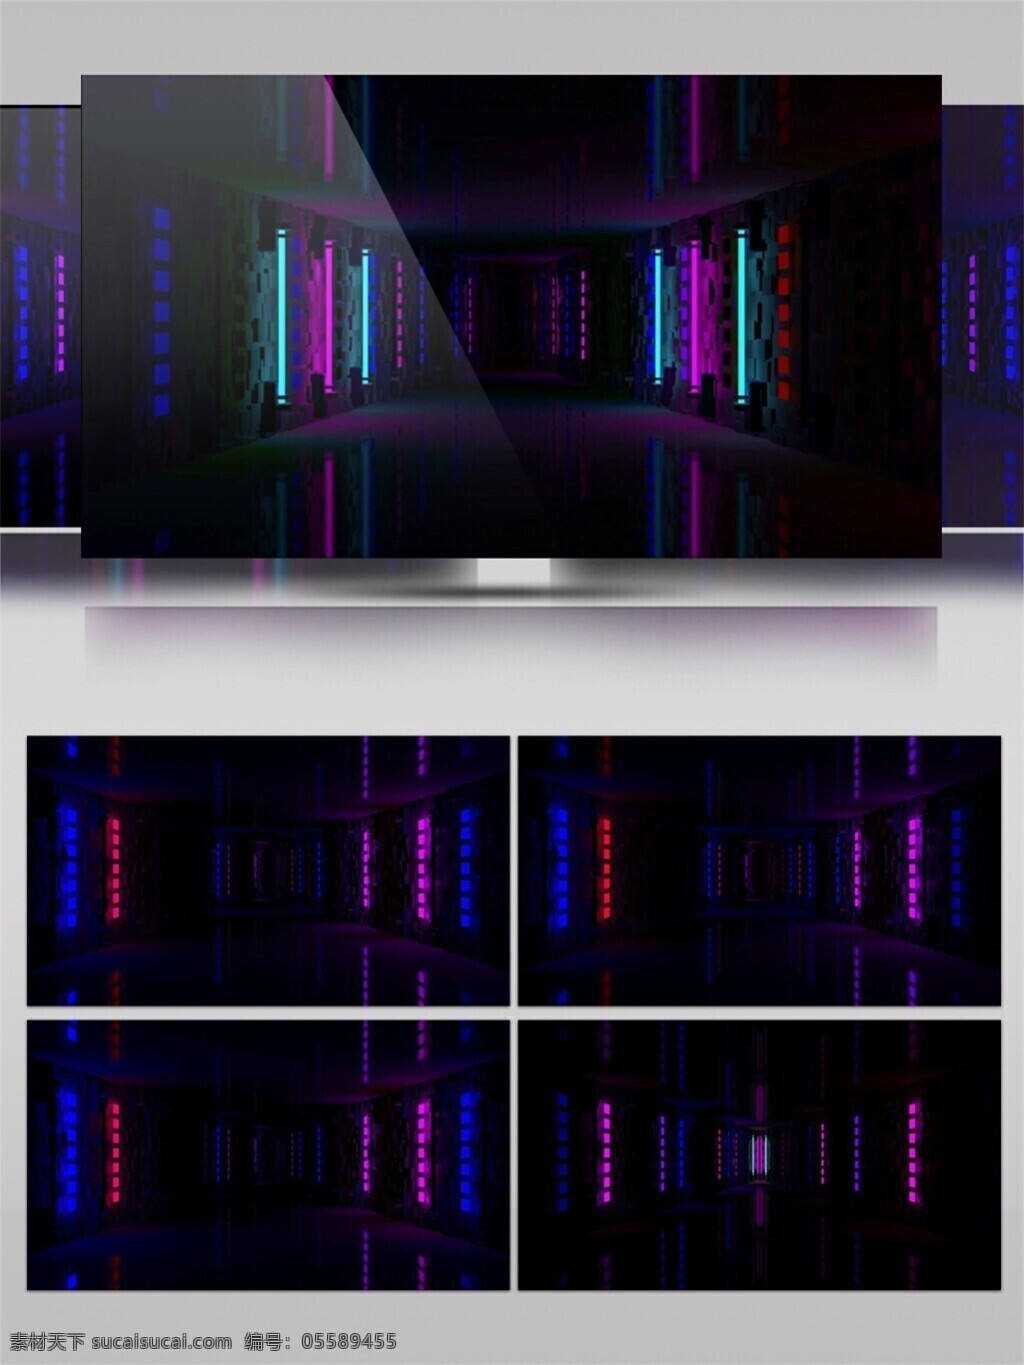 紫色 垂直 光束 动态 视频 激光 动感 视觉享受 手机壁纸 光斑散射